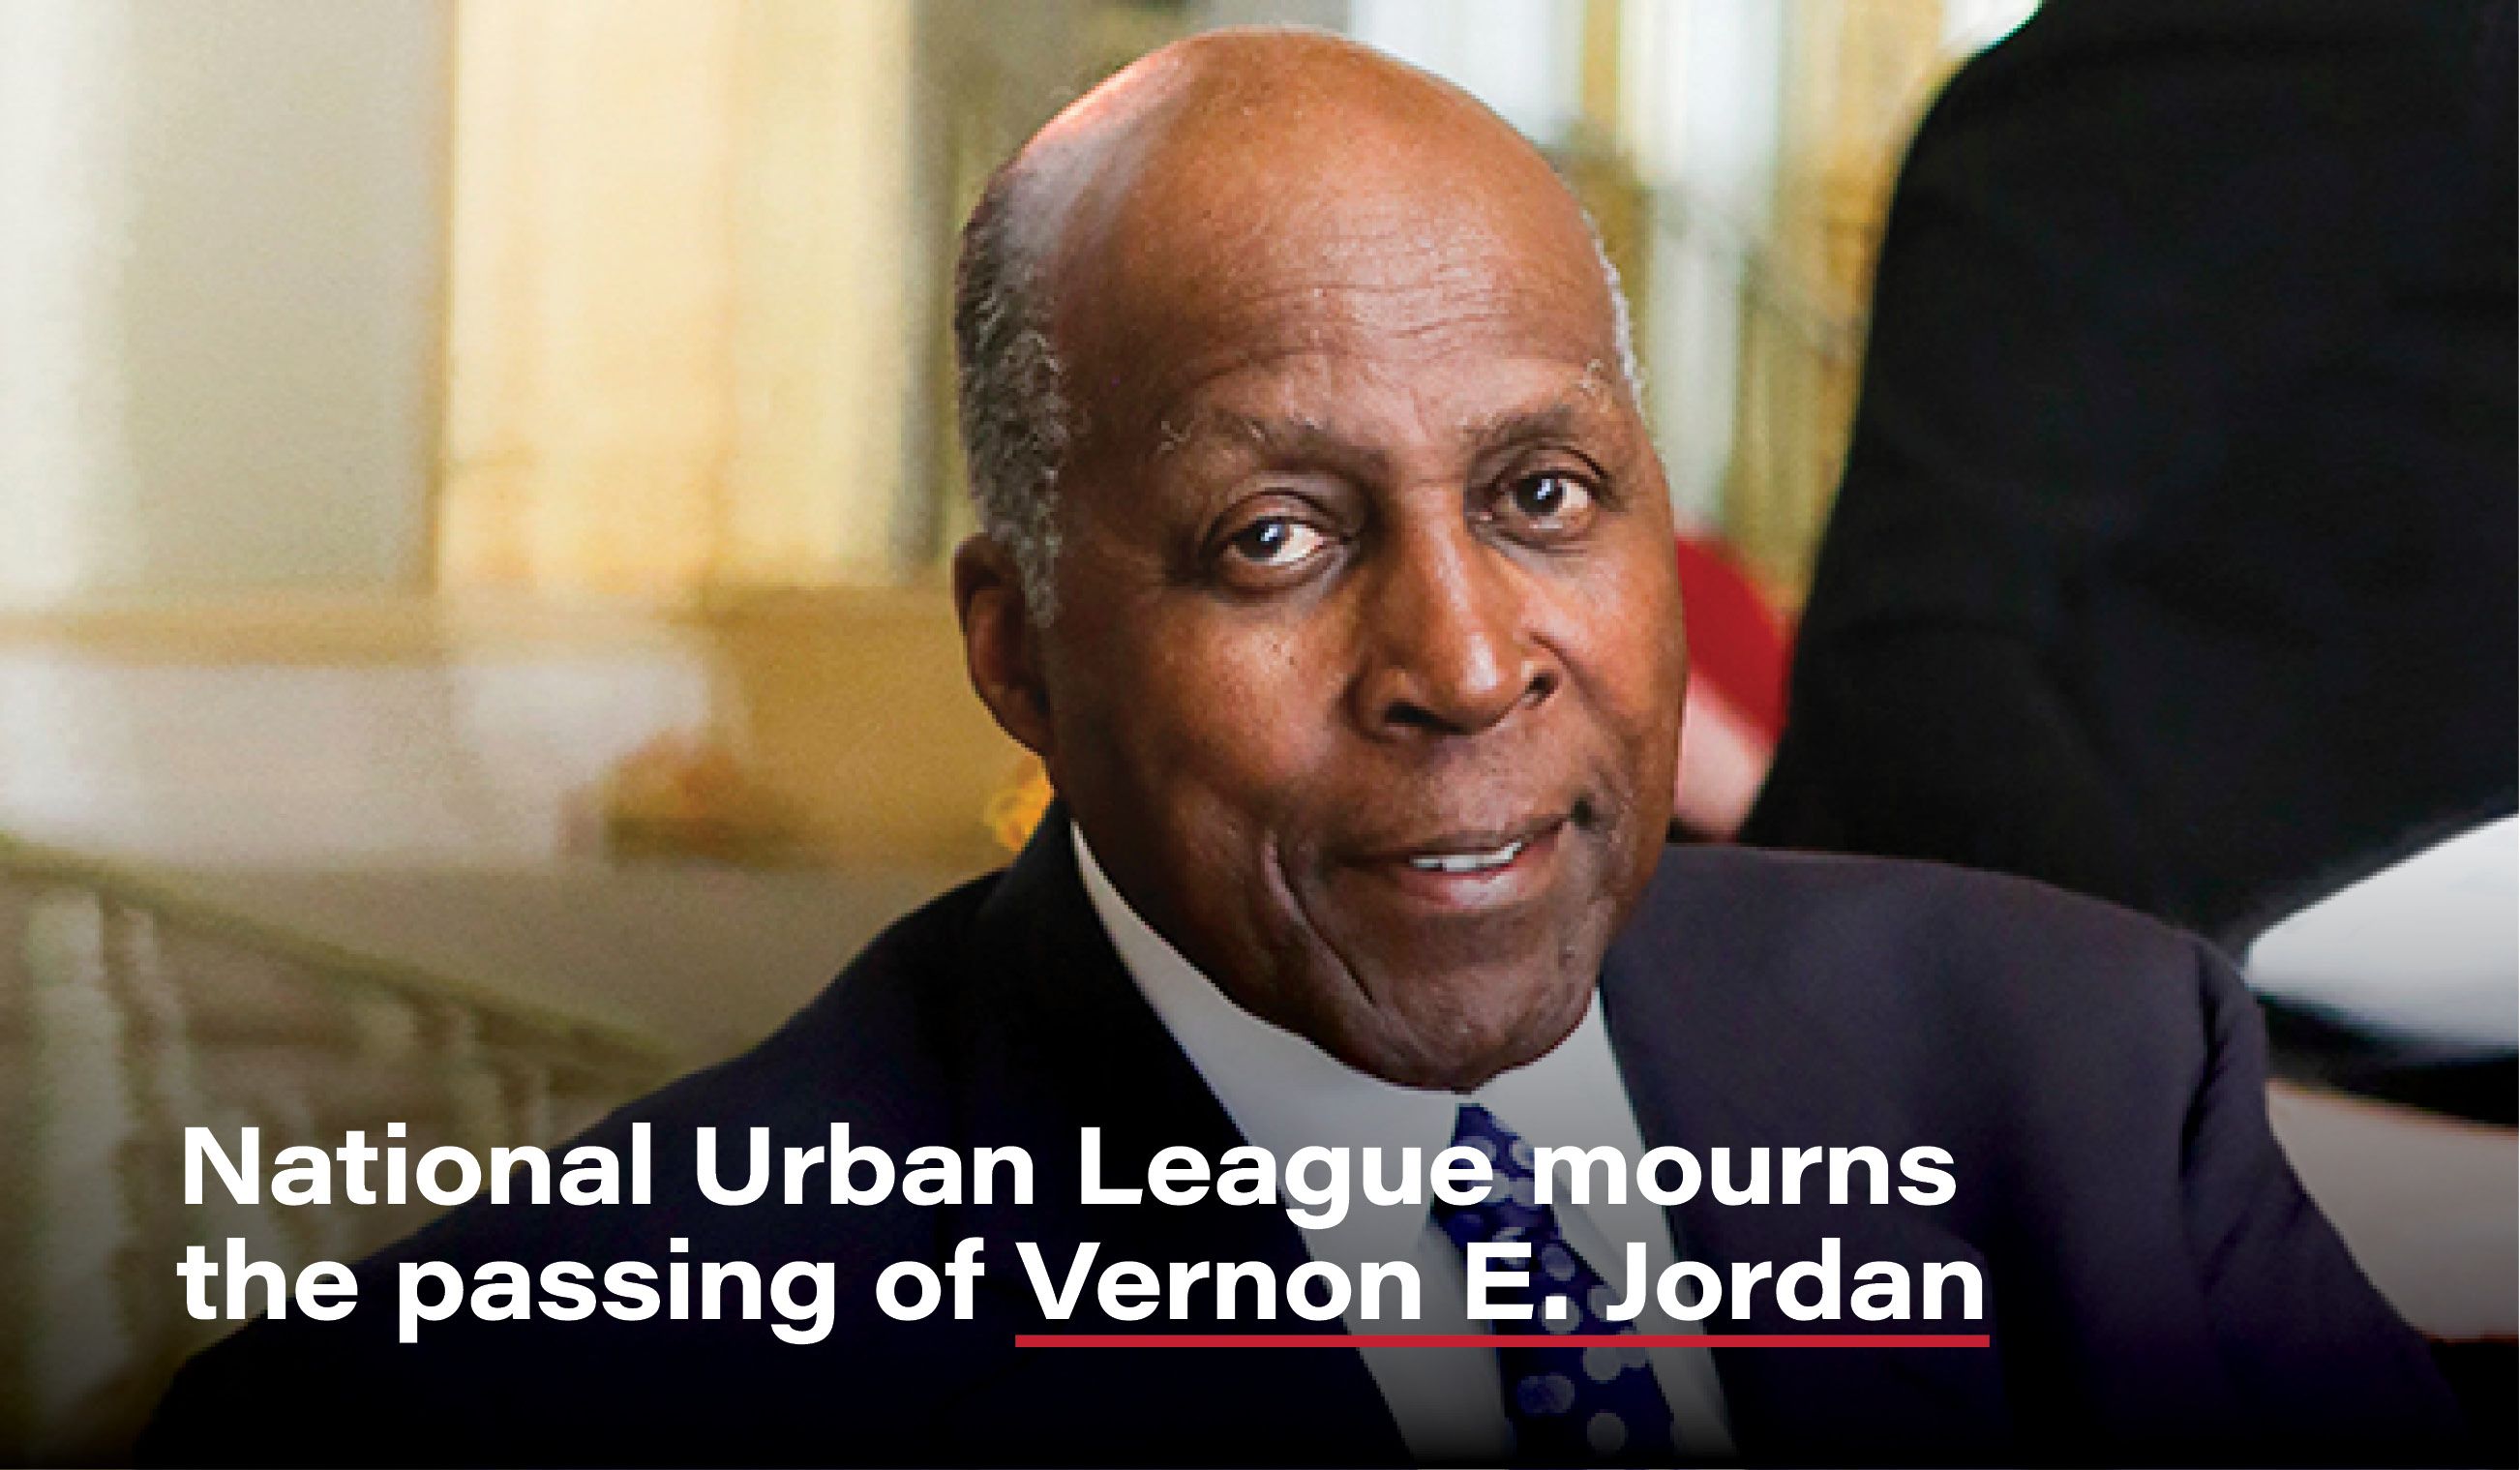 Rest In Power Vernon Jordan